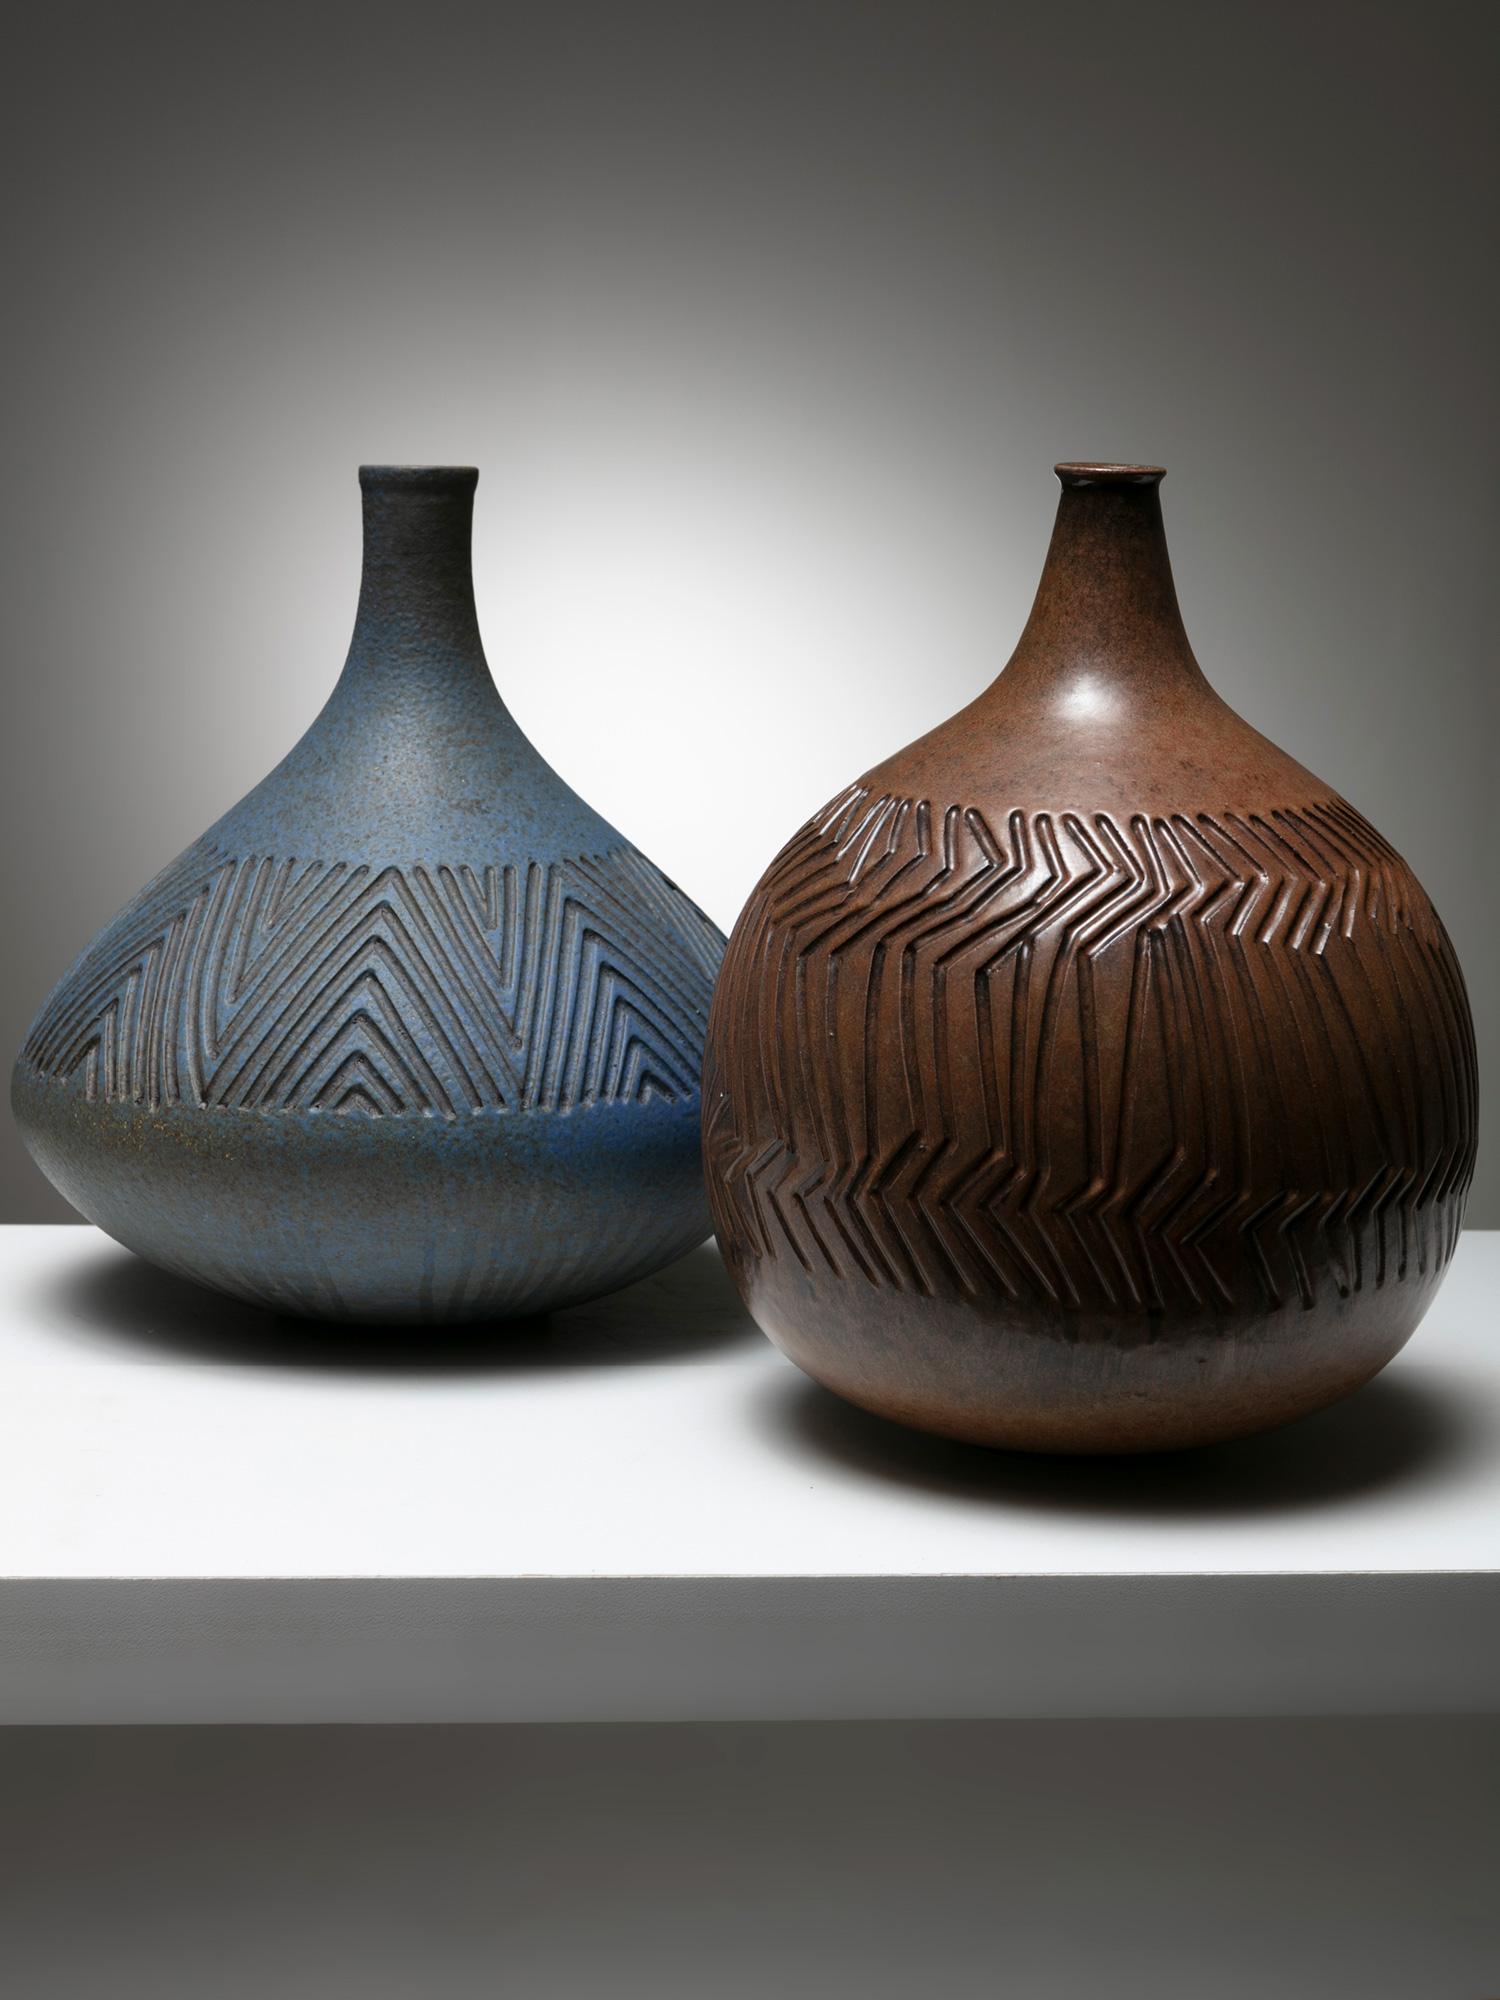 Stabile Keramikvasen mit detaillierter geometrischer Oberflächenstruktur.
Geringfügig unterschiedliche Formen und Größen.